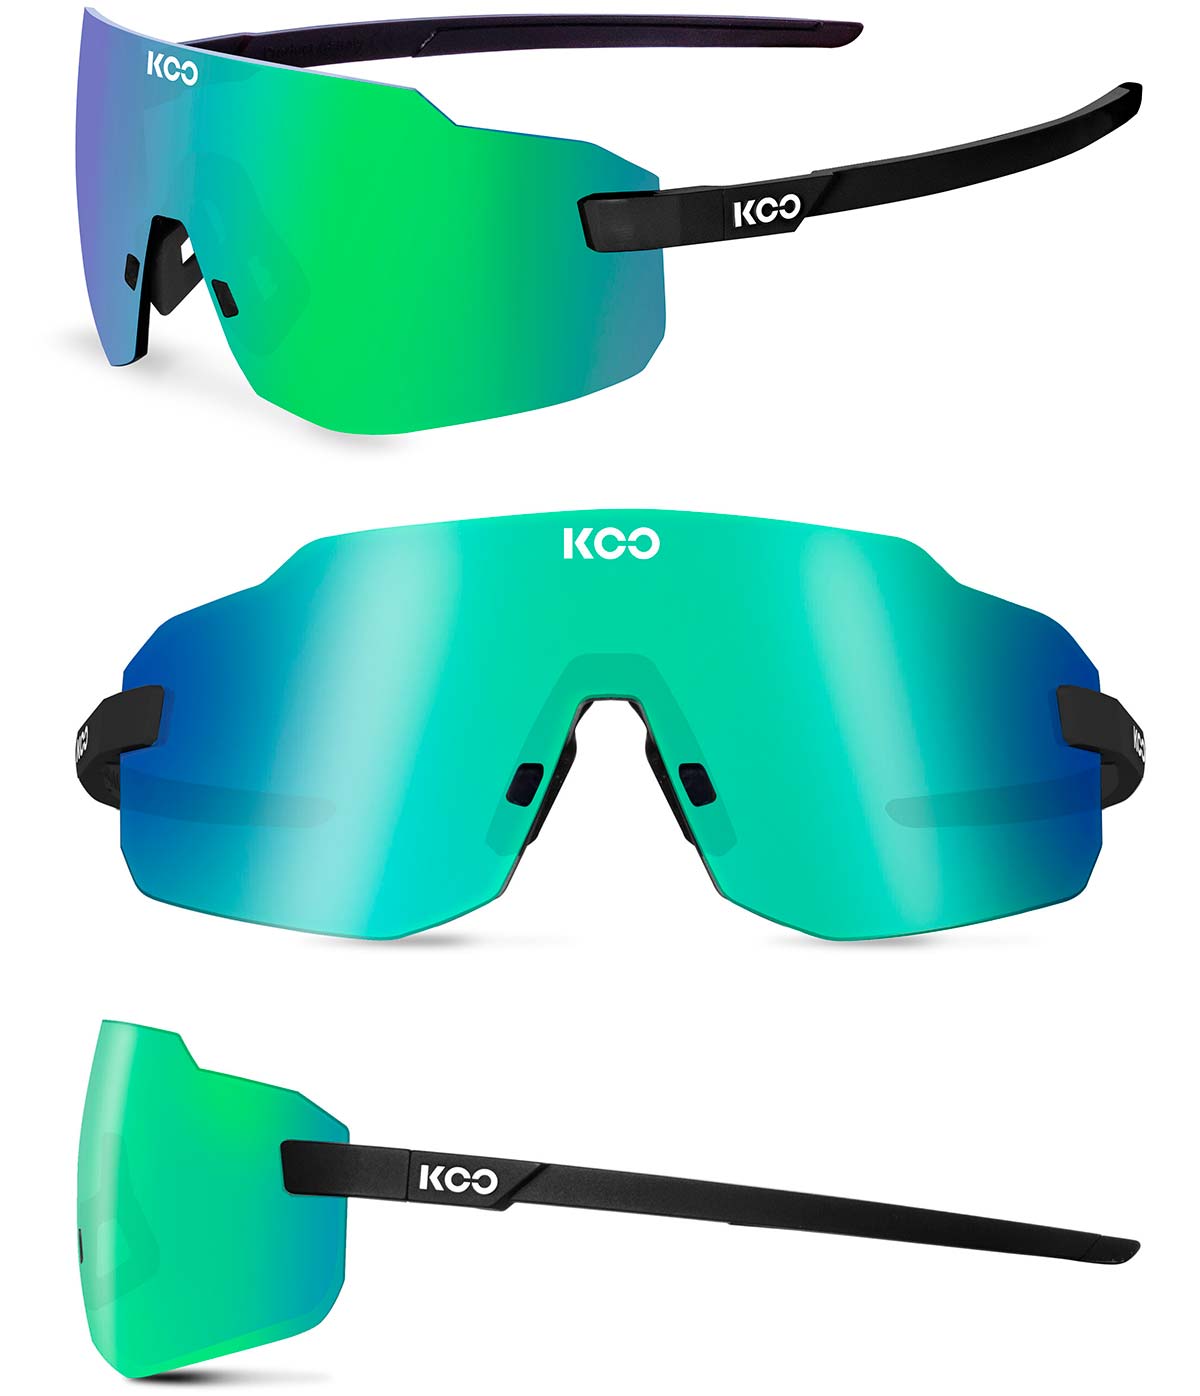 En TodoMountainBike: Koo Supernova, unas gafas para deportistas de alto rendimiento de múltiples disciplinas